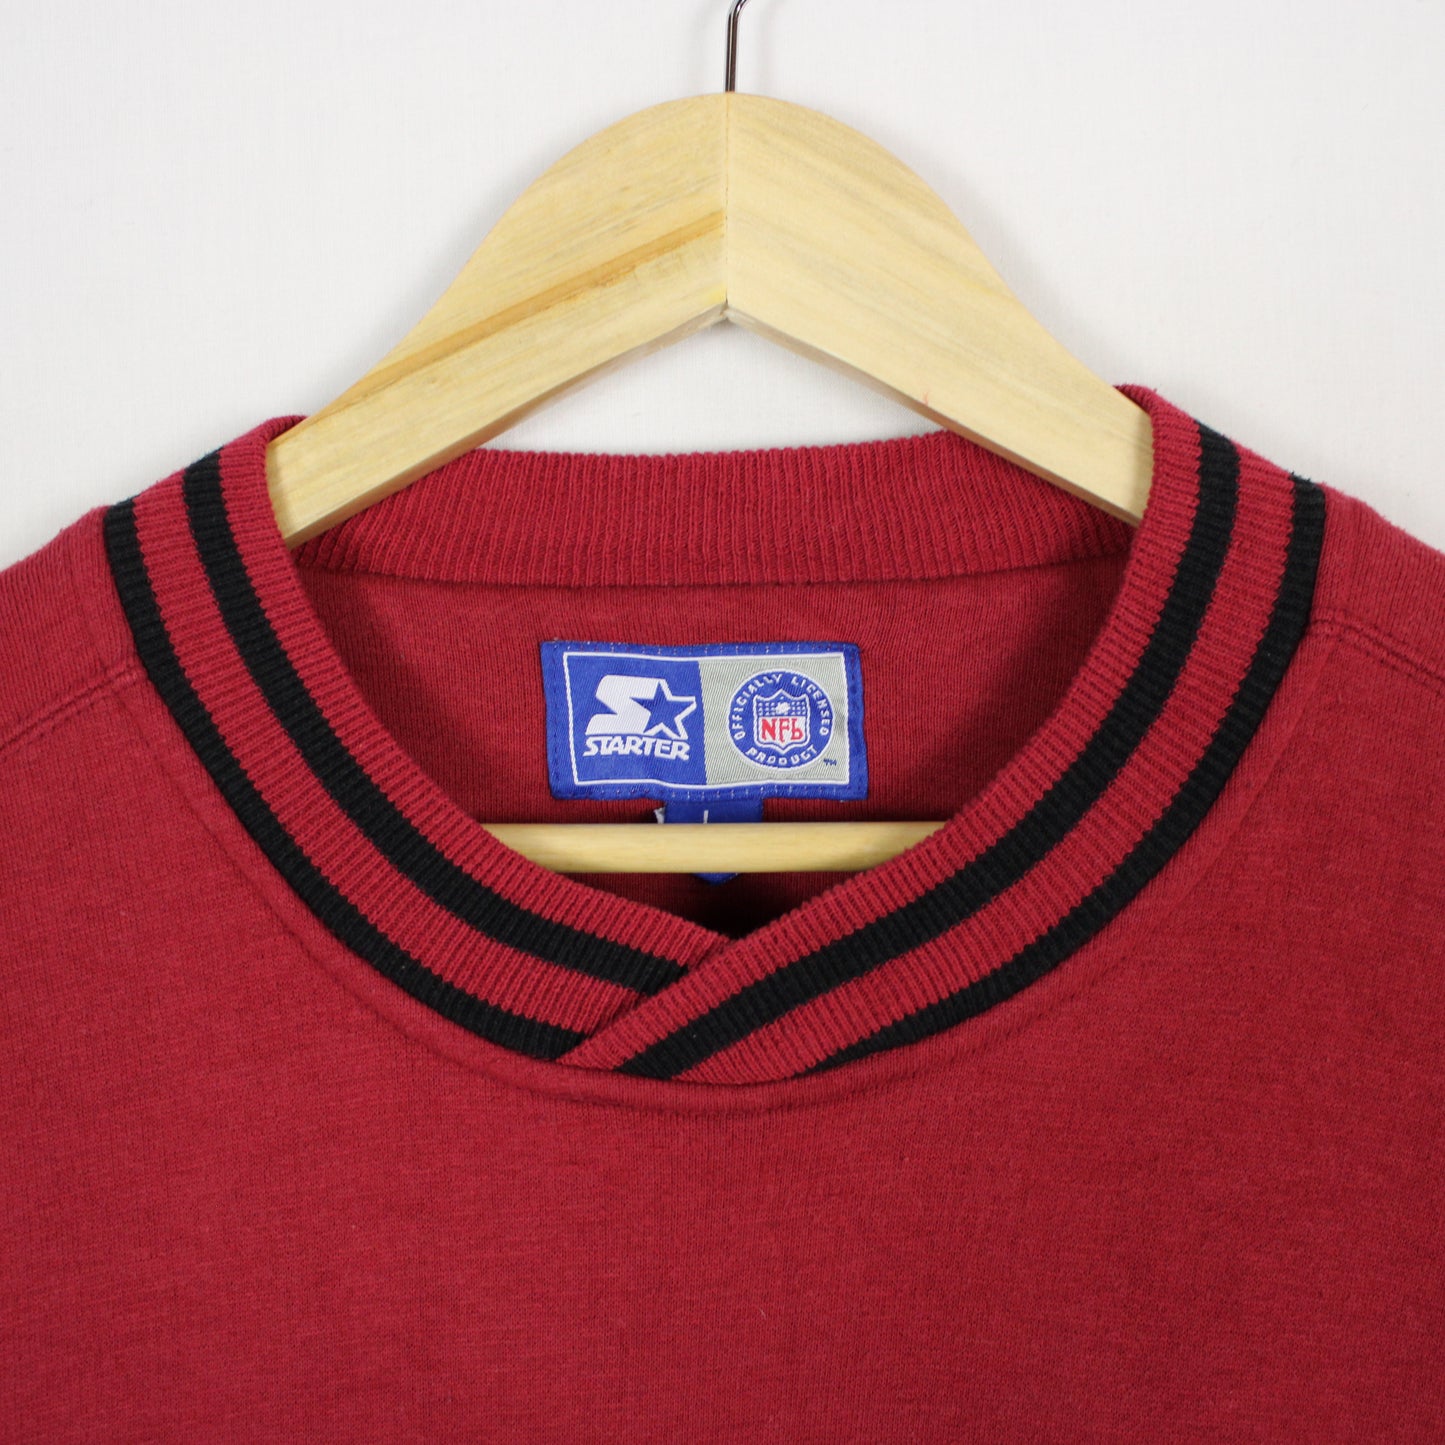 Vintage San Francisco 49ers NFL Starter Sweatshirt - L